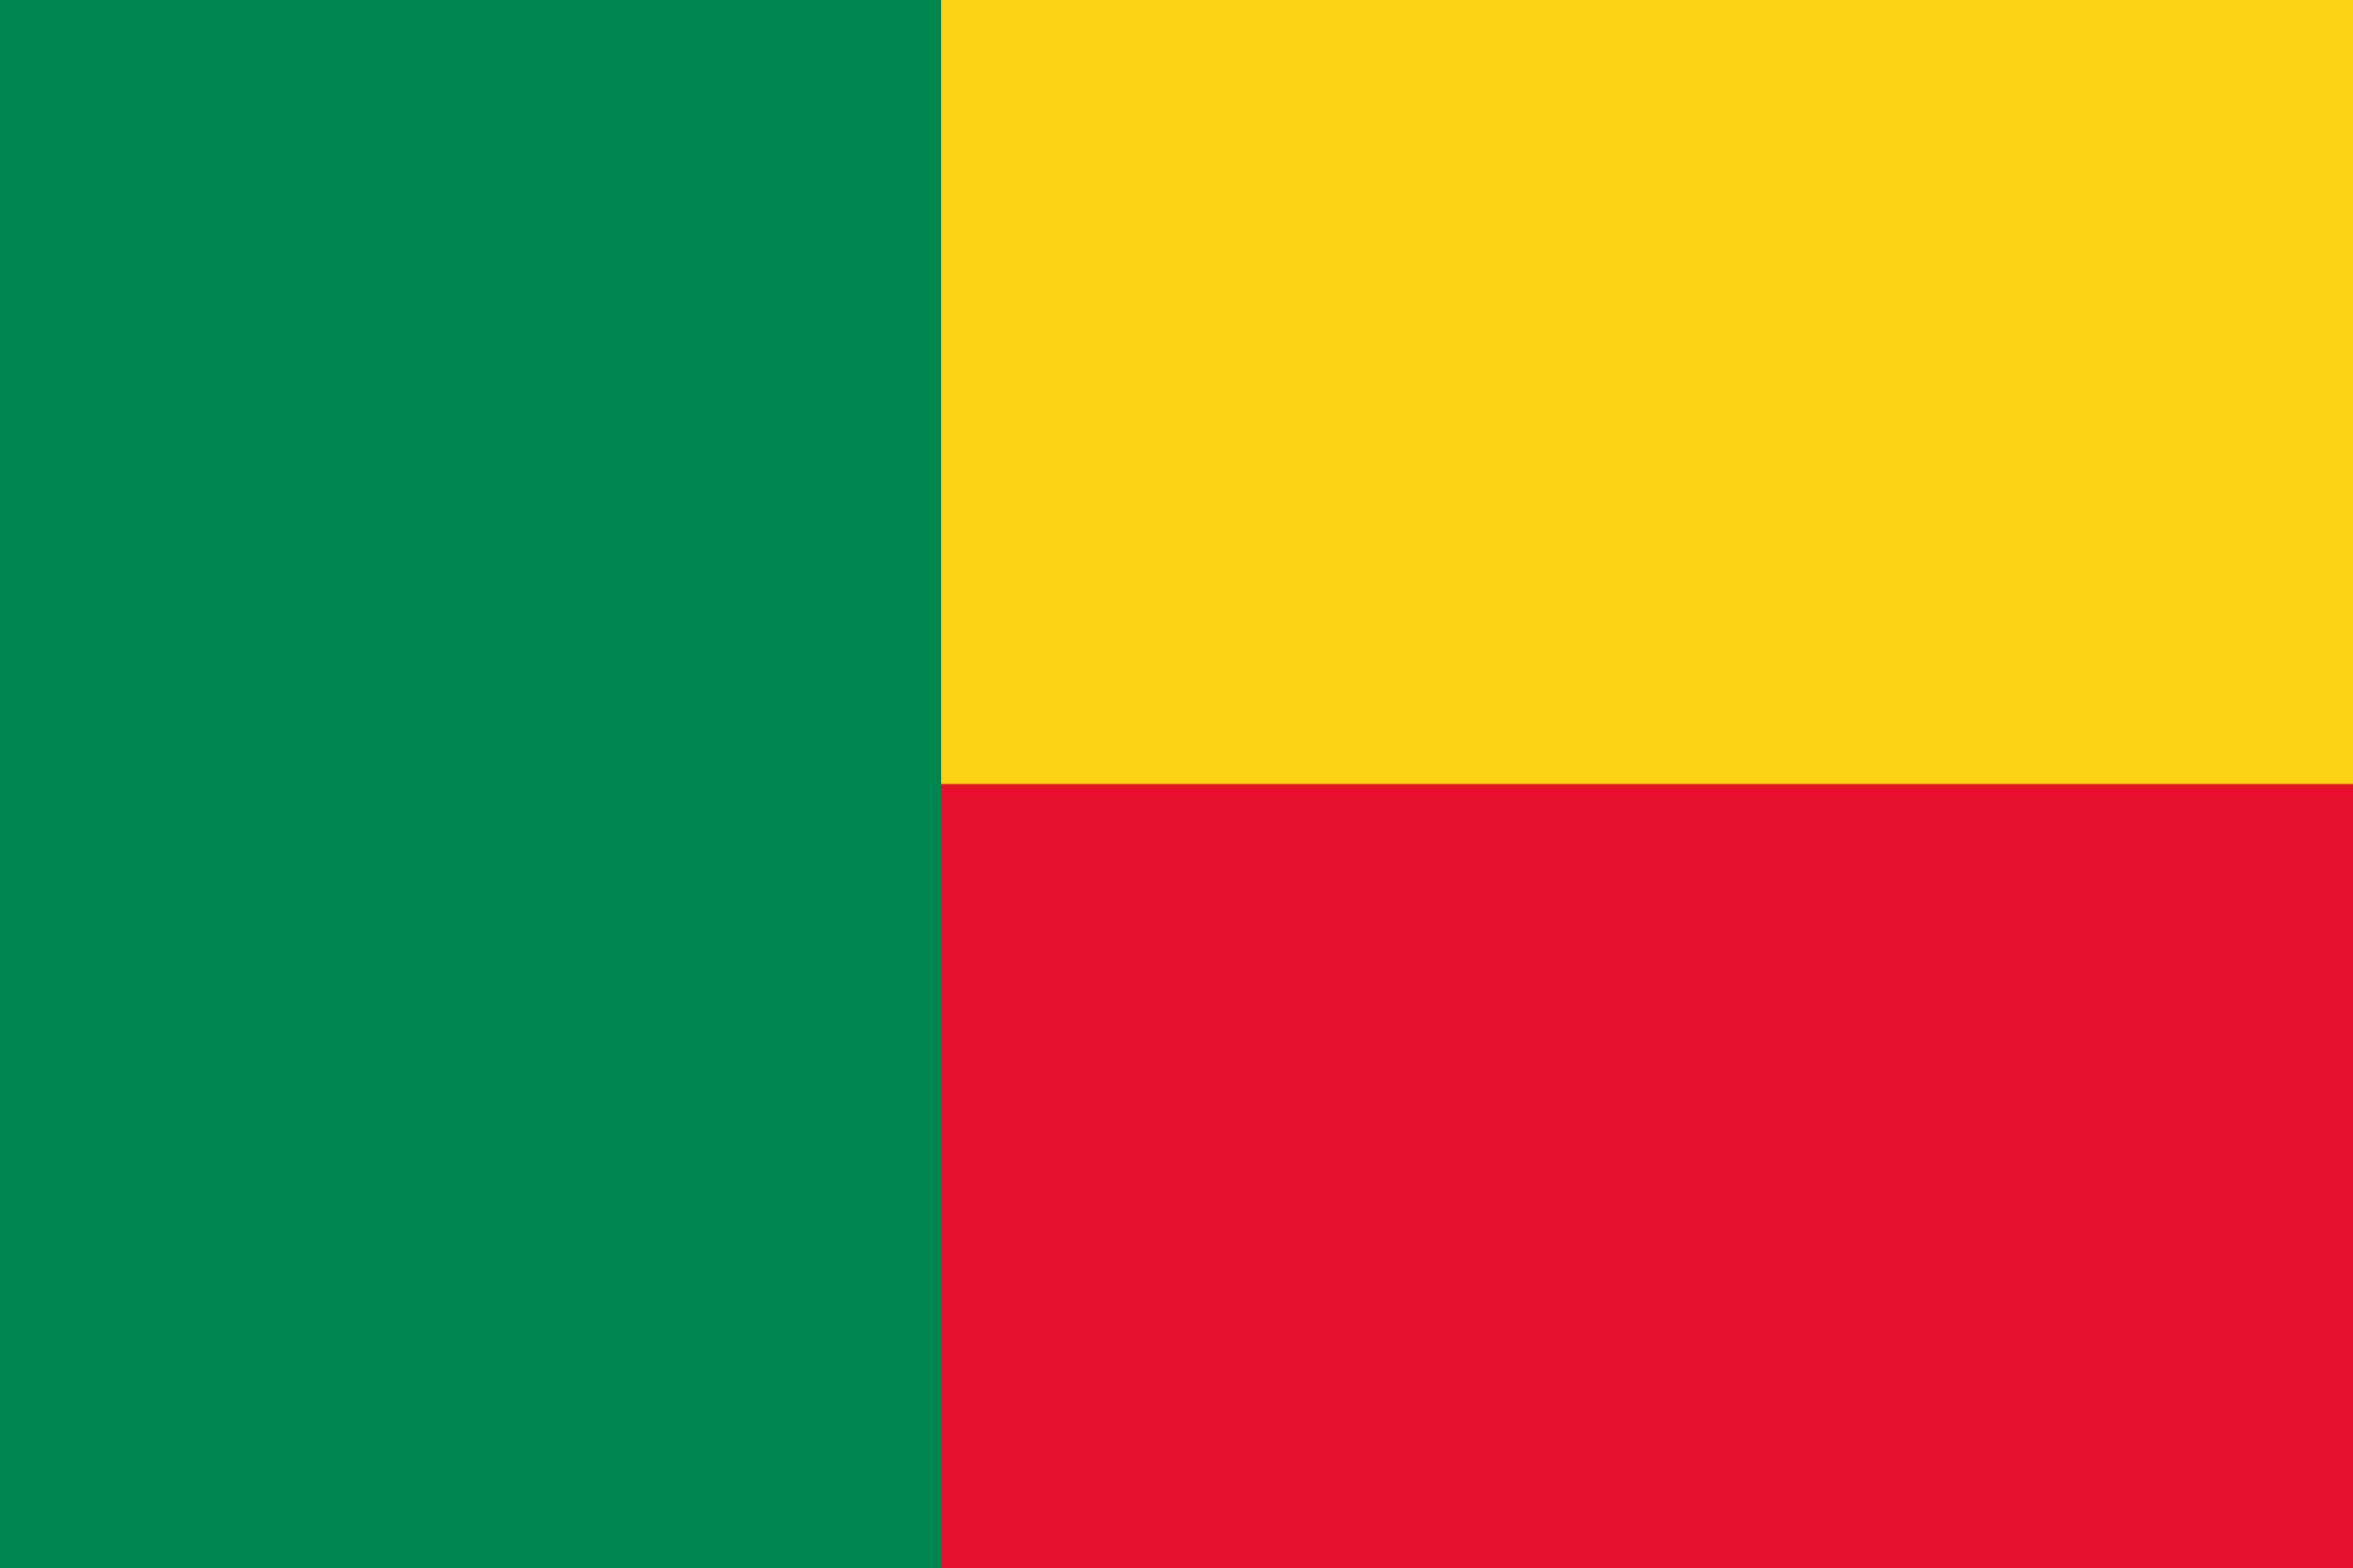 Benin Flag Image - Free Download